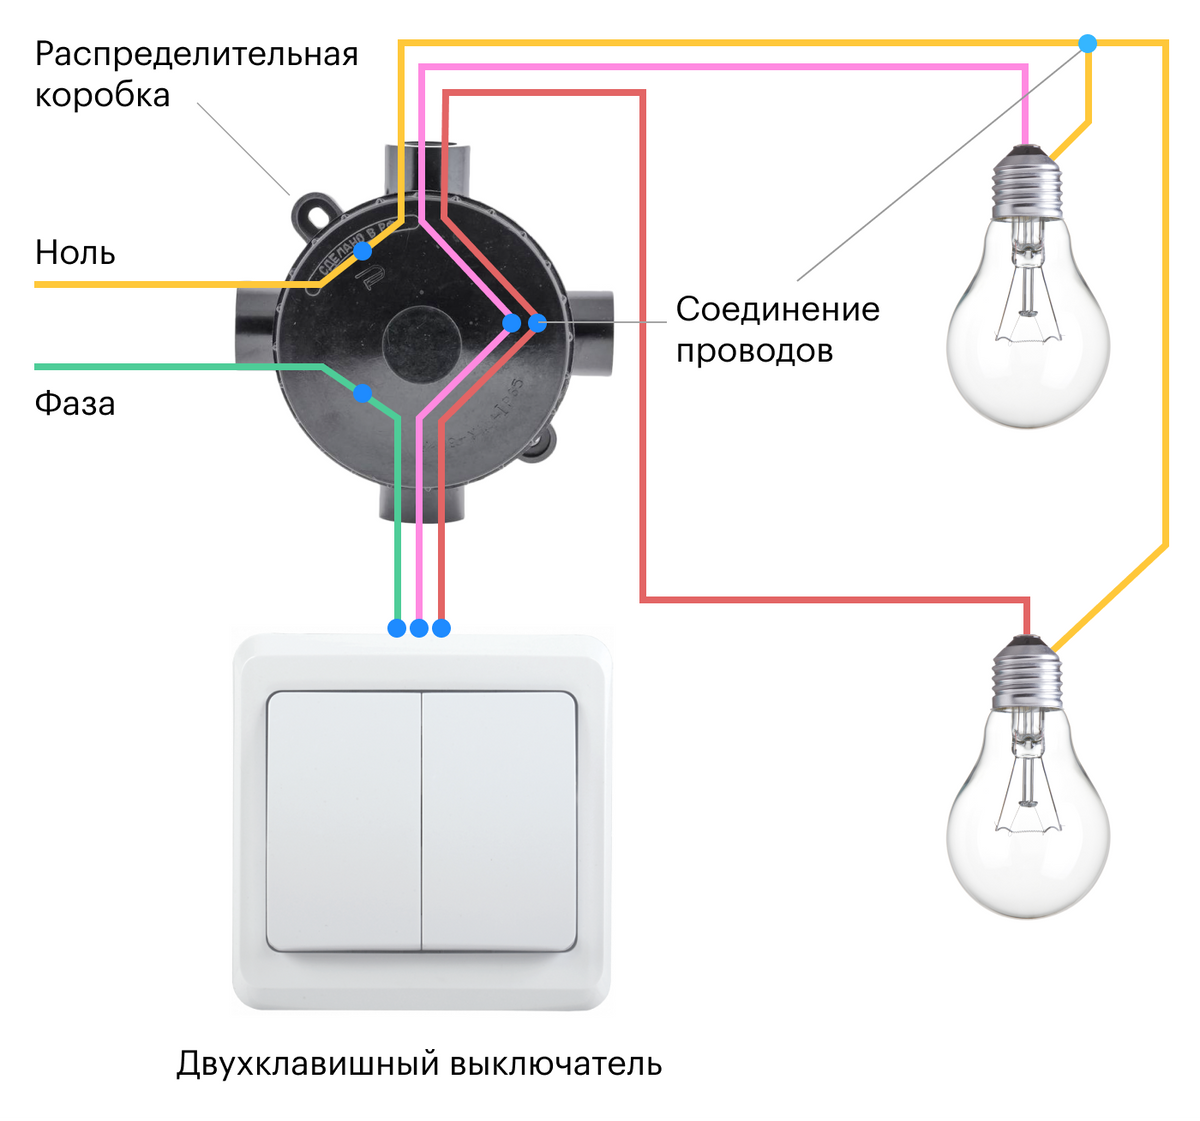 Как подключить двойной выключатель фото на 2 лампочки